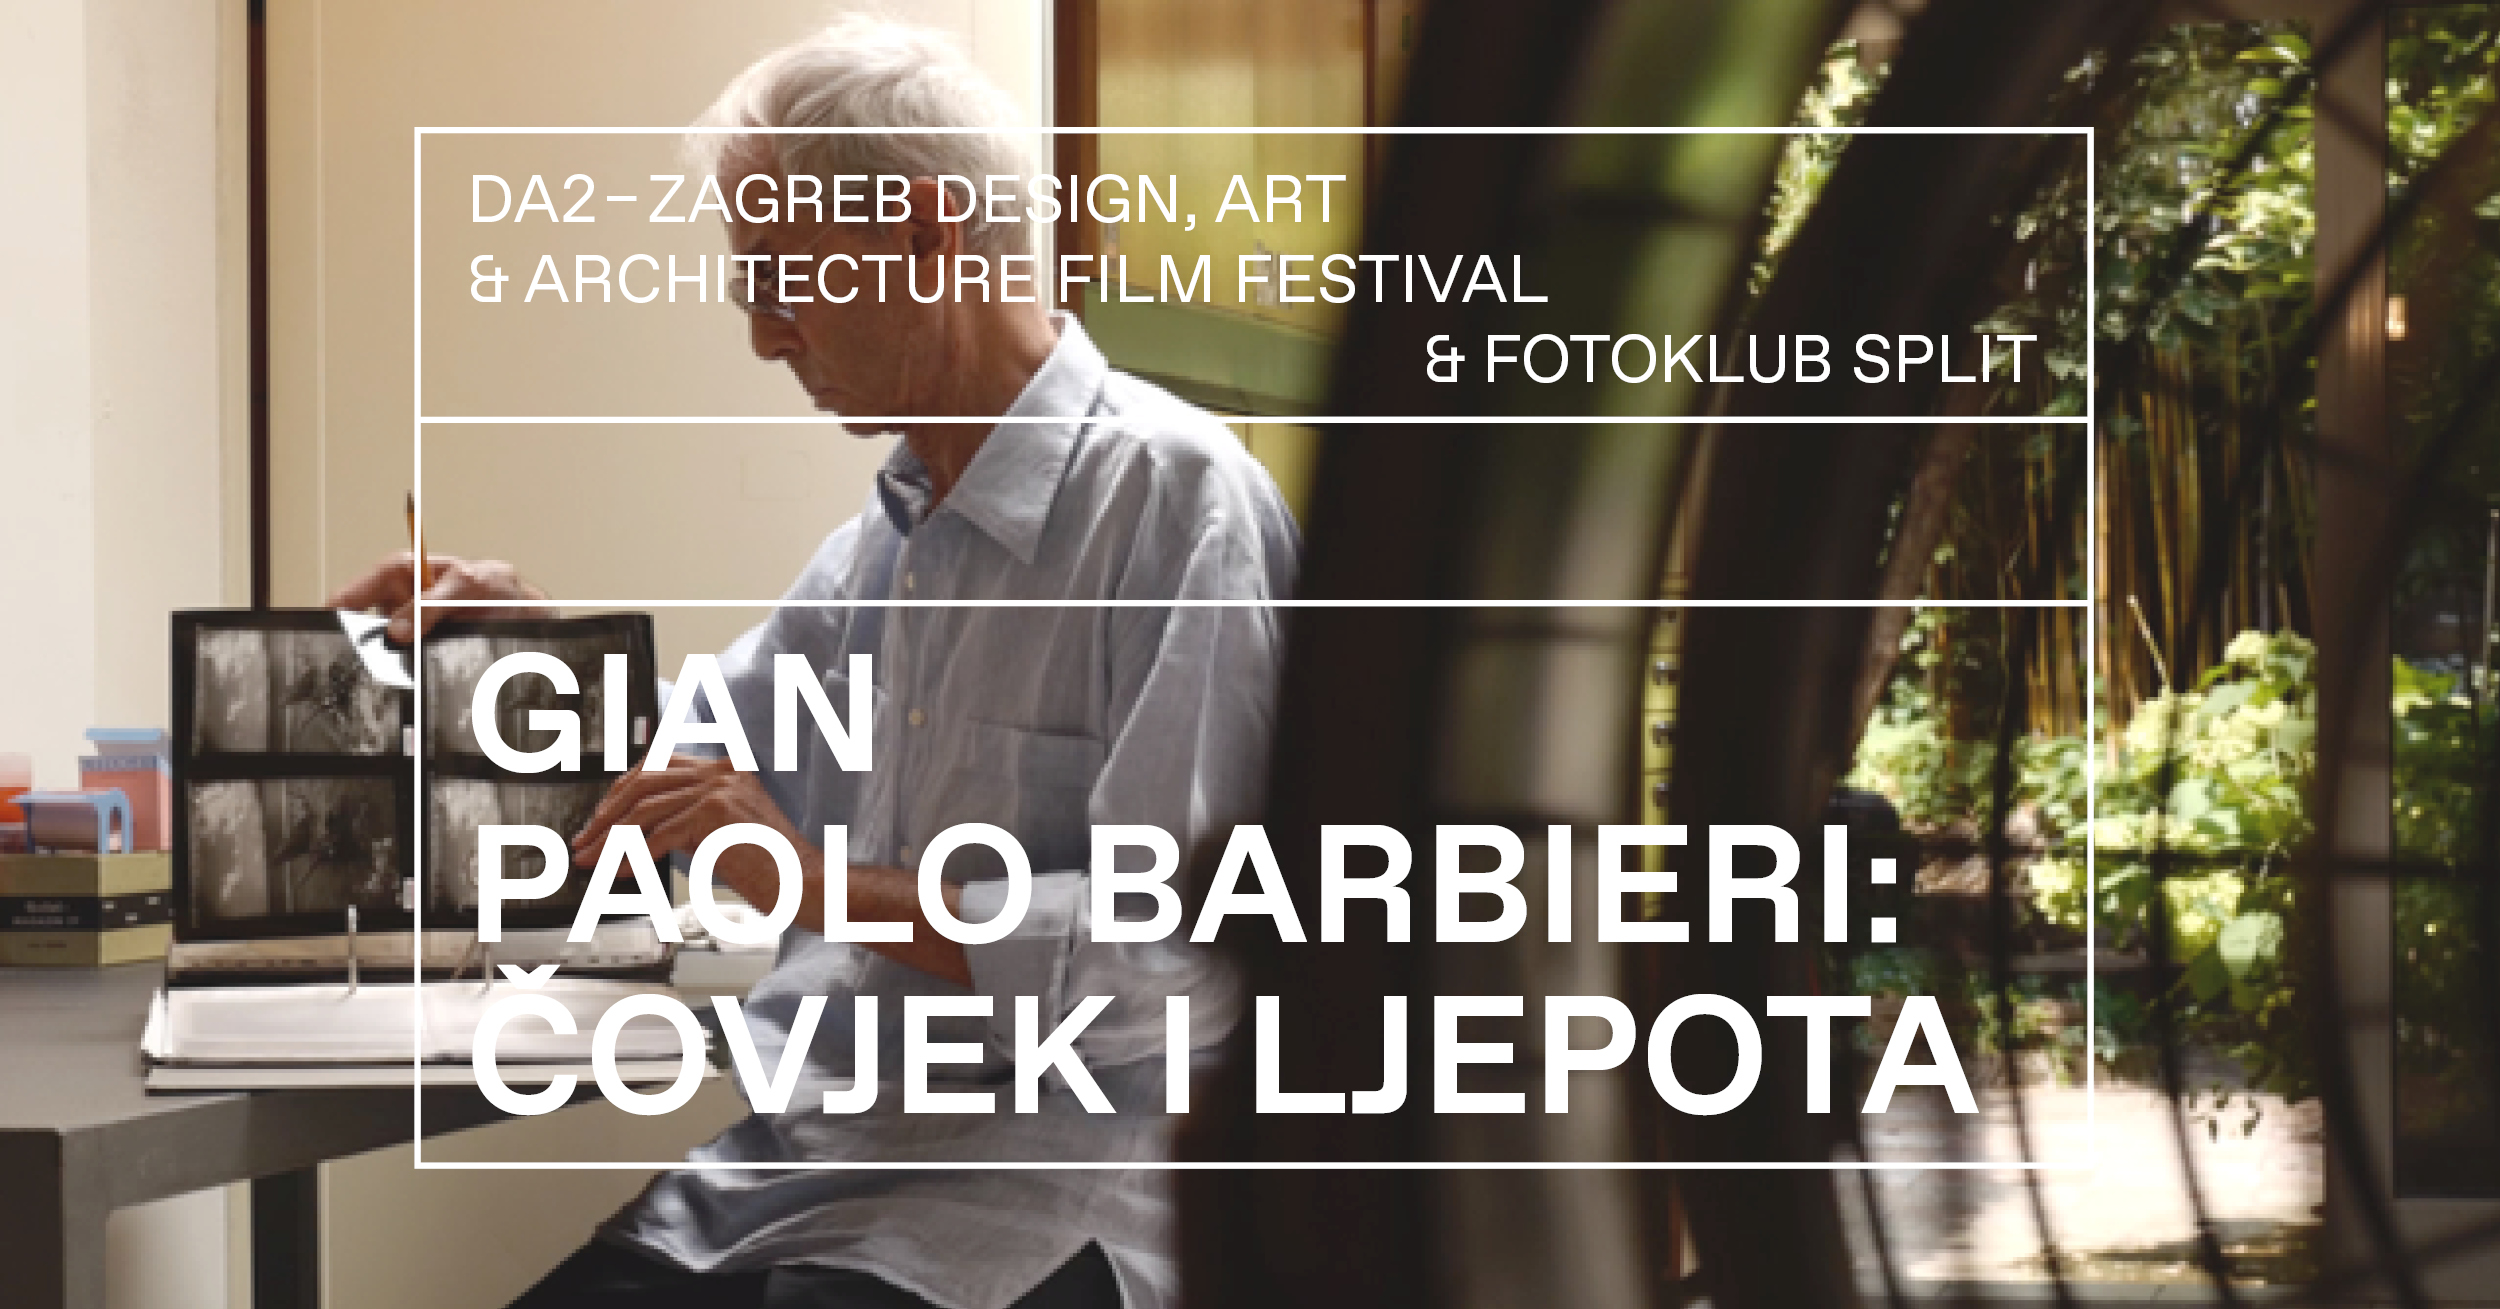 Fotoklub i DA2 – Zagreb Design, Art & Architecture Film Festival donose besplatnu filmsku projekciju o ikoni talijanske fotografije